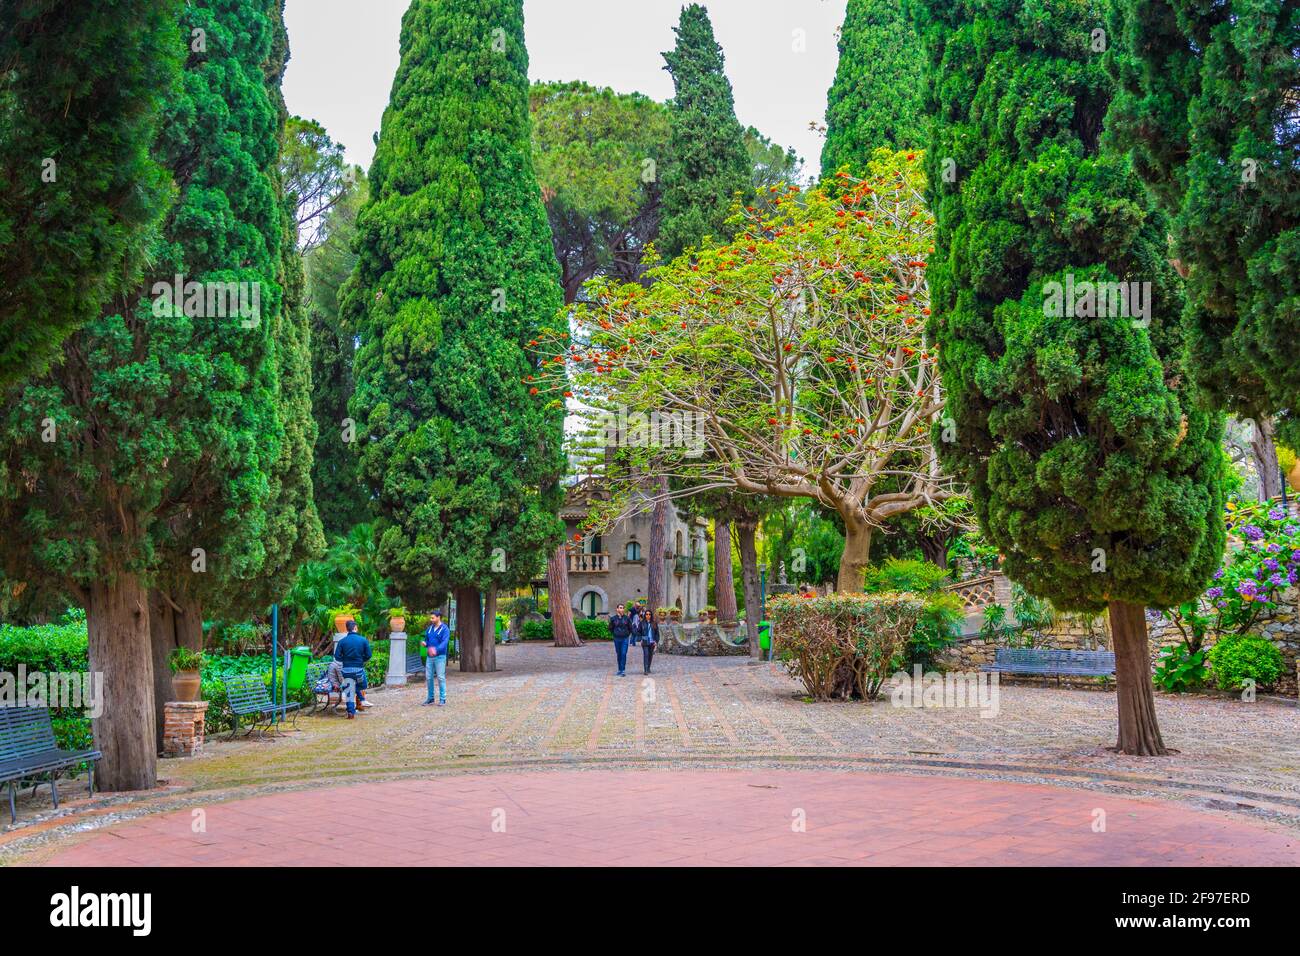 Park Giardini della villa comunale in Taormina, Sicily, Italy Stock Photo